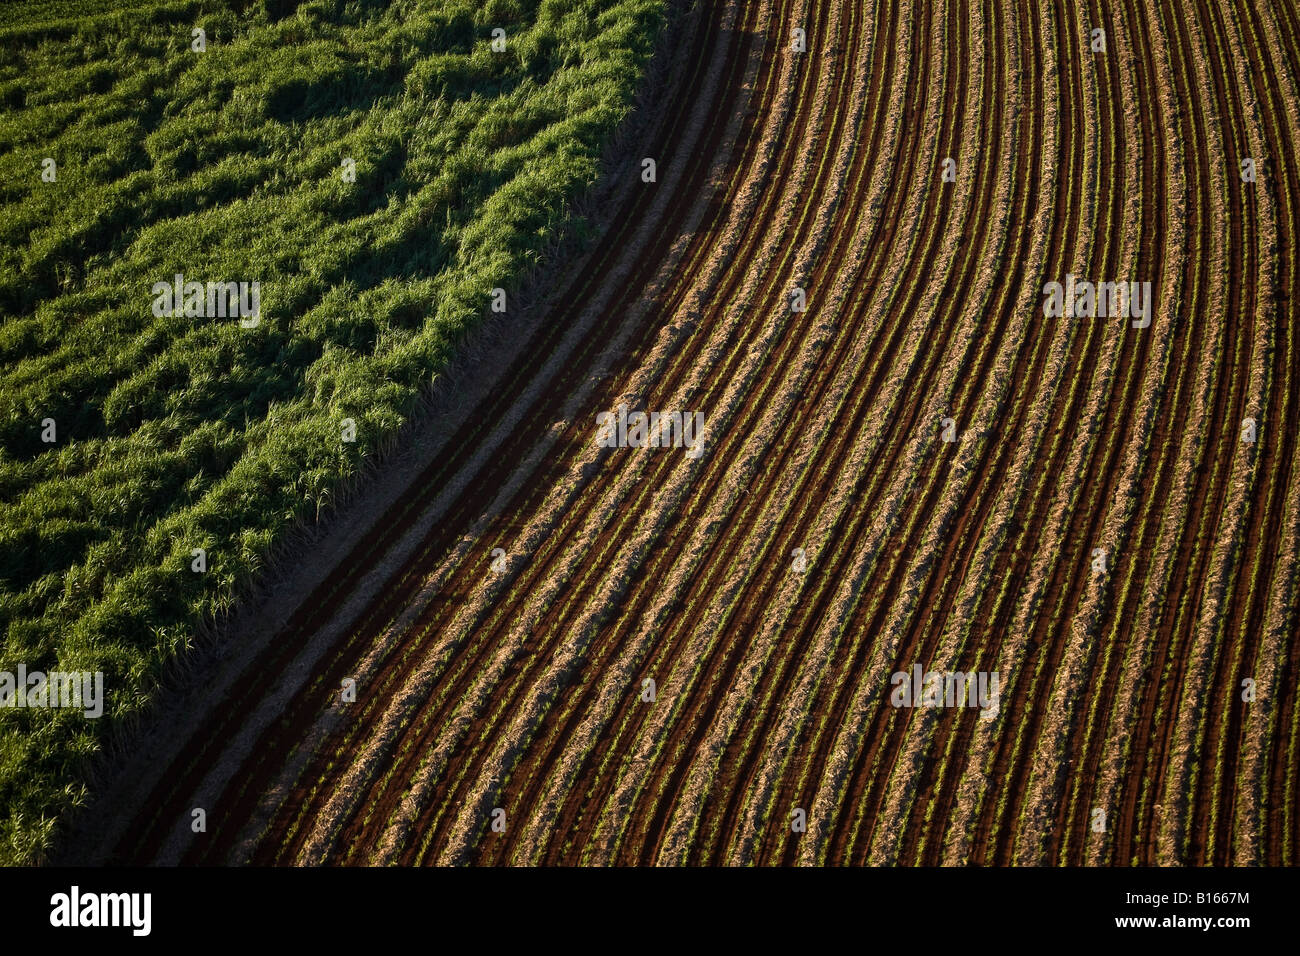 La piantagione di canna da zucchero nei pressi di Ribeirao Preto Sao Paulo membro Brasile terreni arati Foto Stock